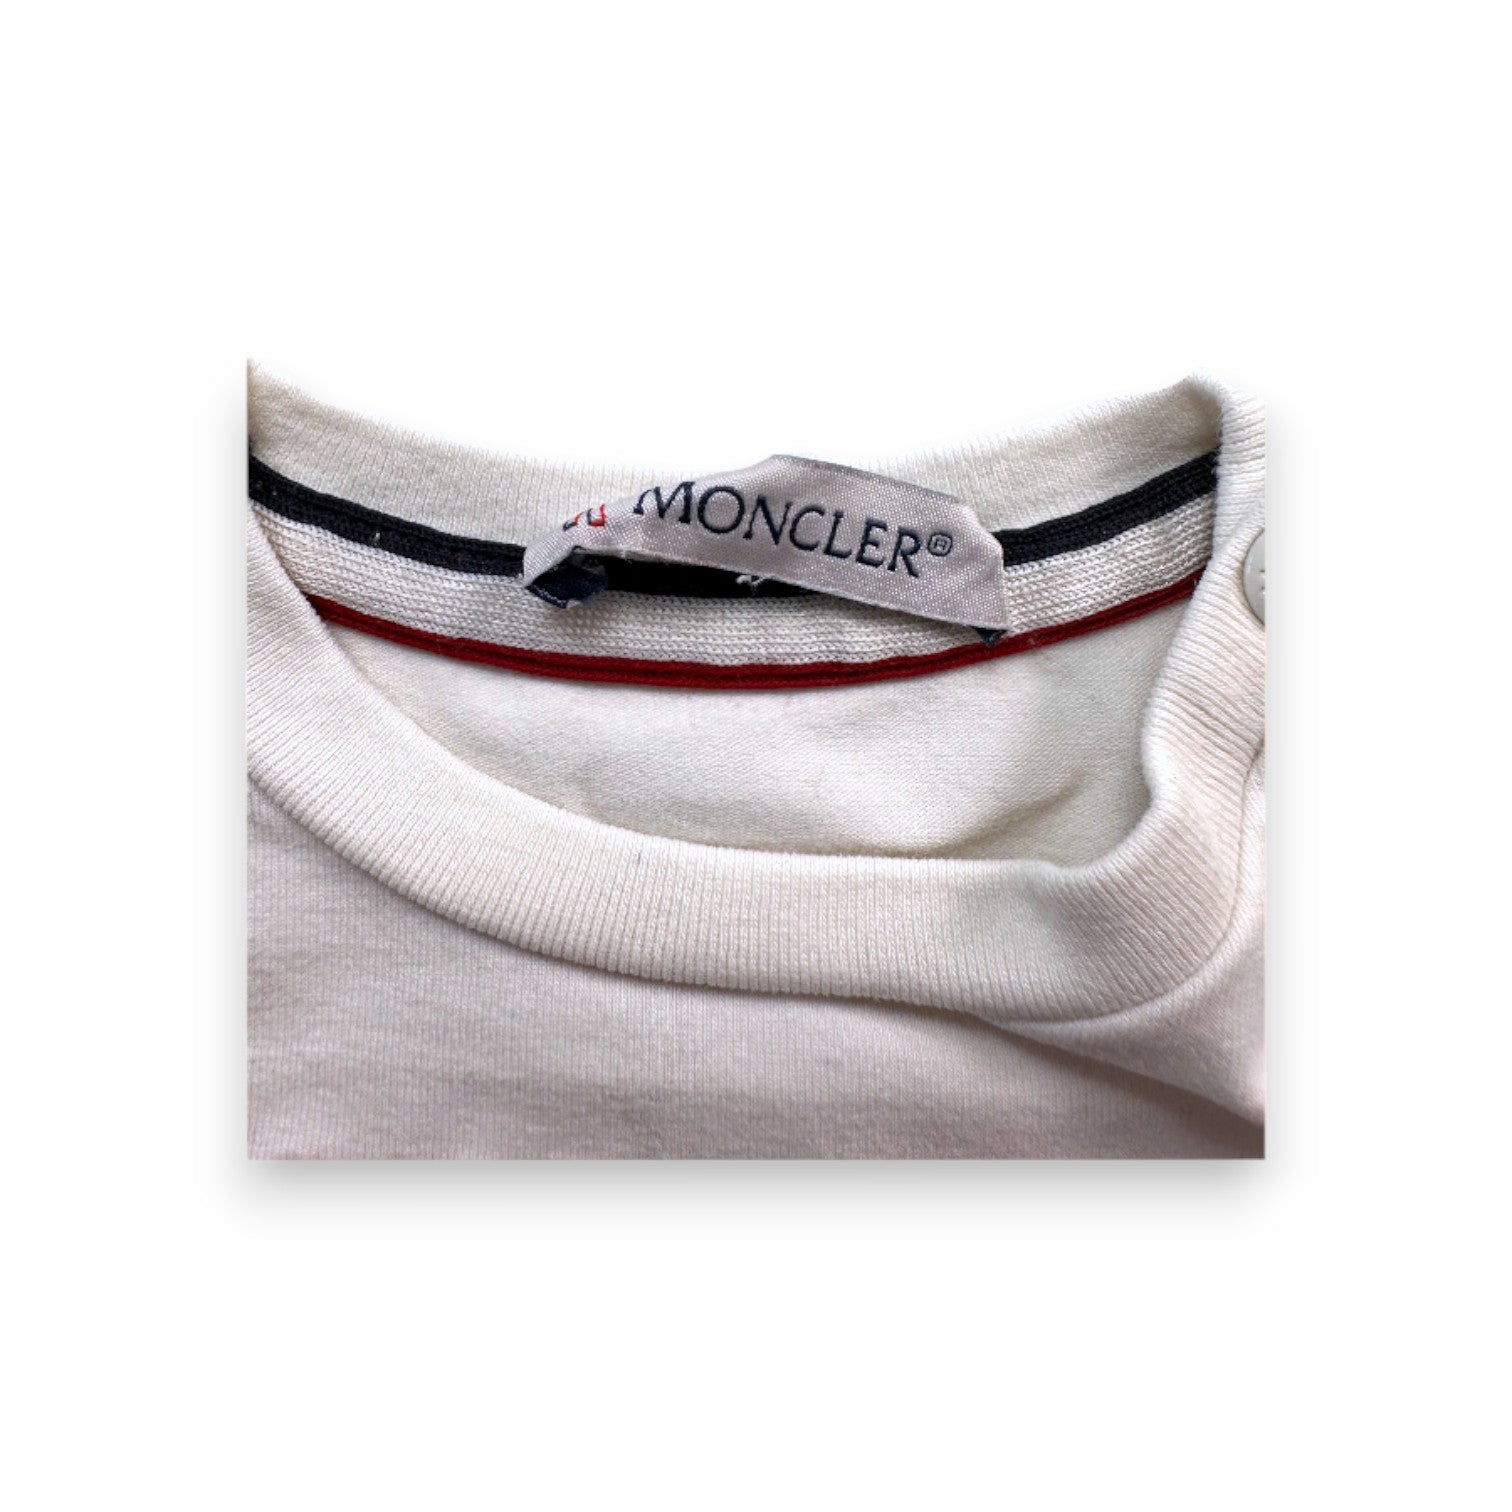 MONCLER - T-shirt à manches longues blanc brodé "Moncler" - 3 mois